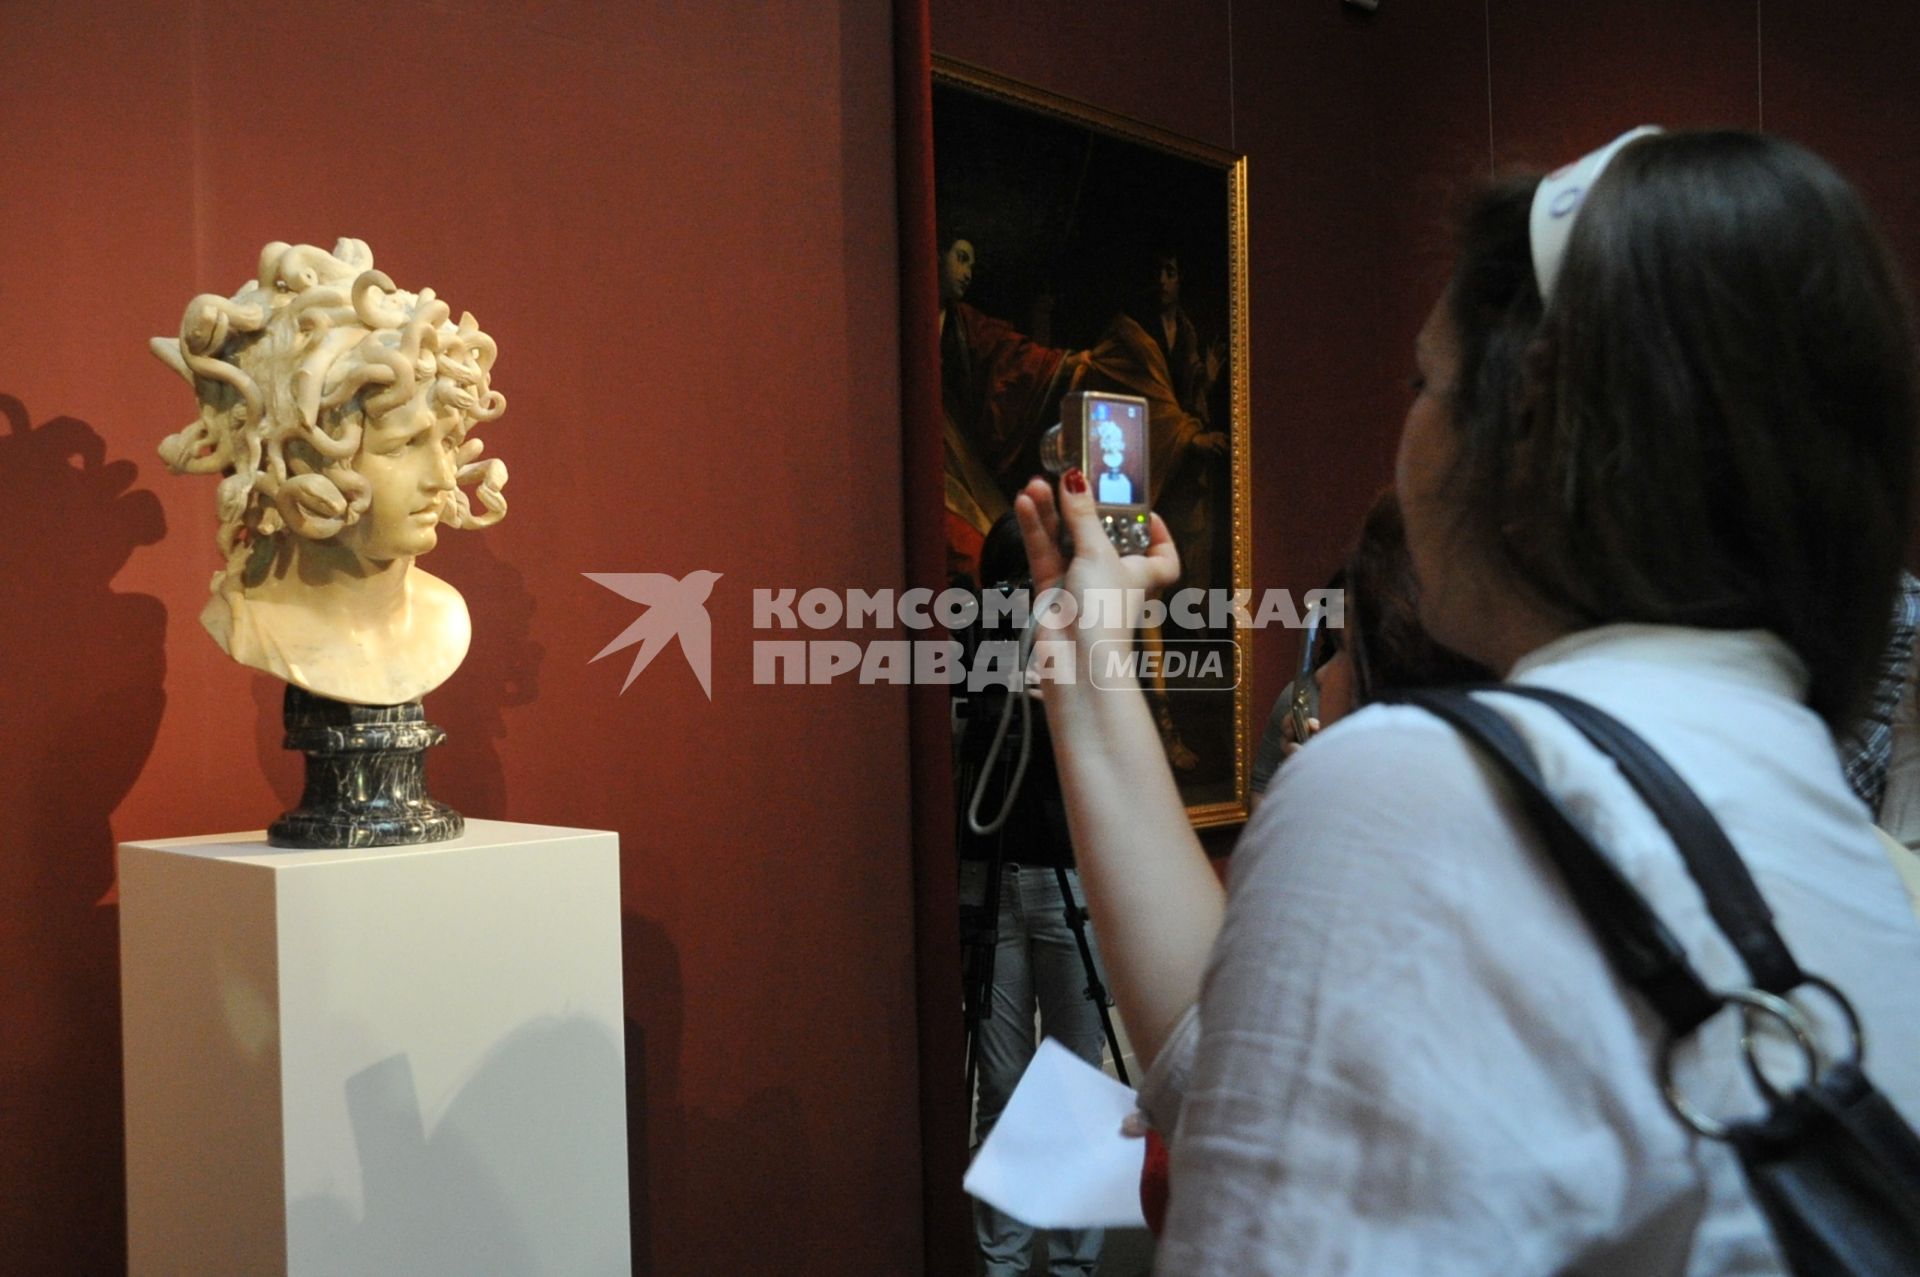 Выставка в ГМИИ, бюст Горгона Медуза. Женщина с мобильником.  02 июля 2011